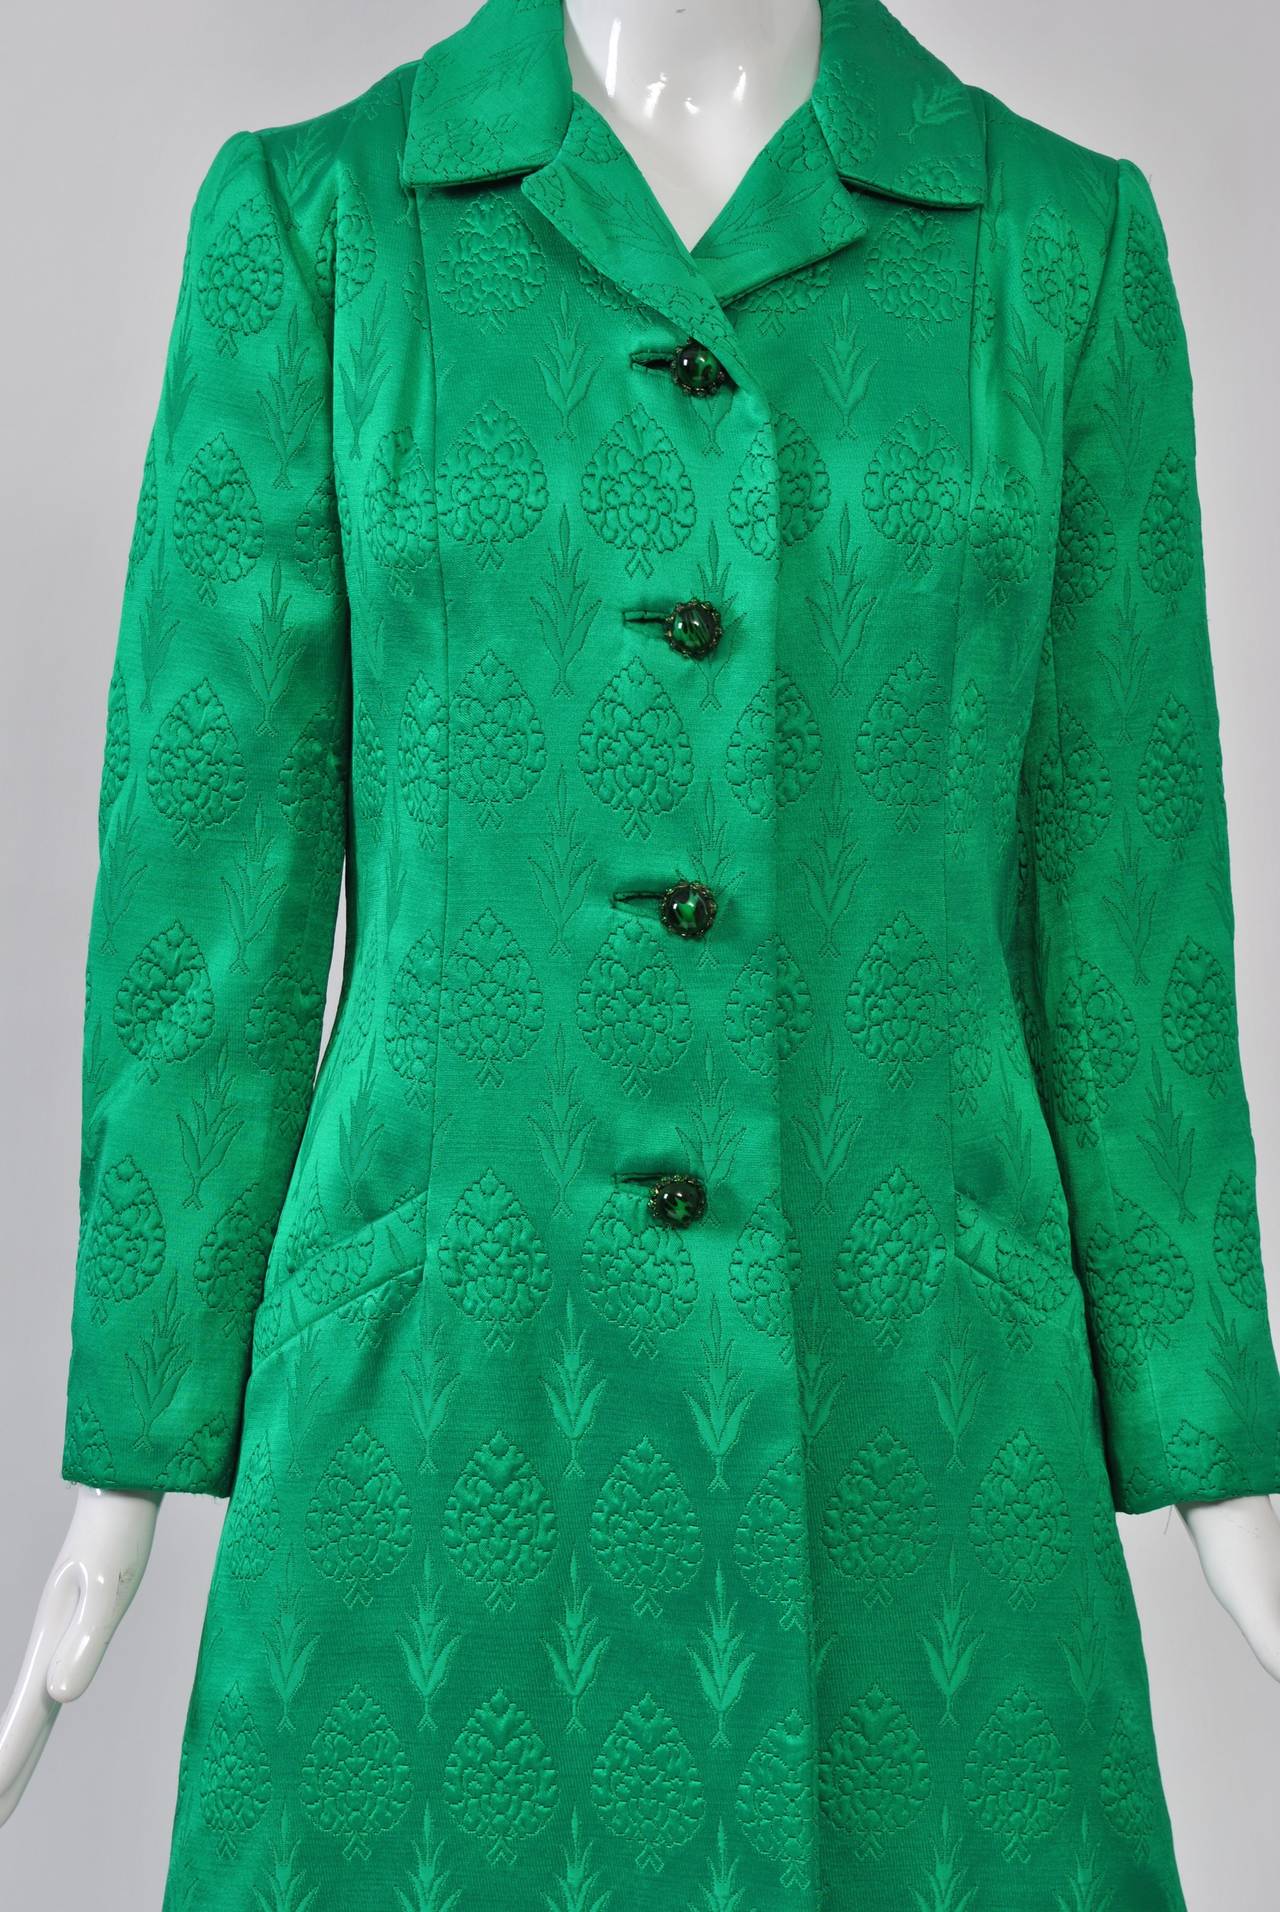 Women's 1960s Kelly Green Brocade Coat